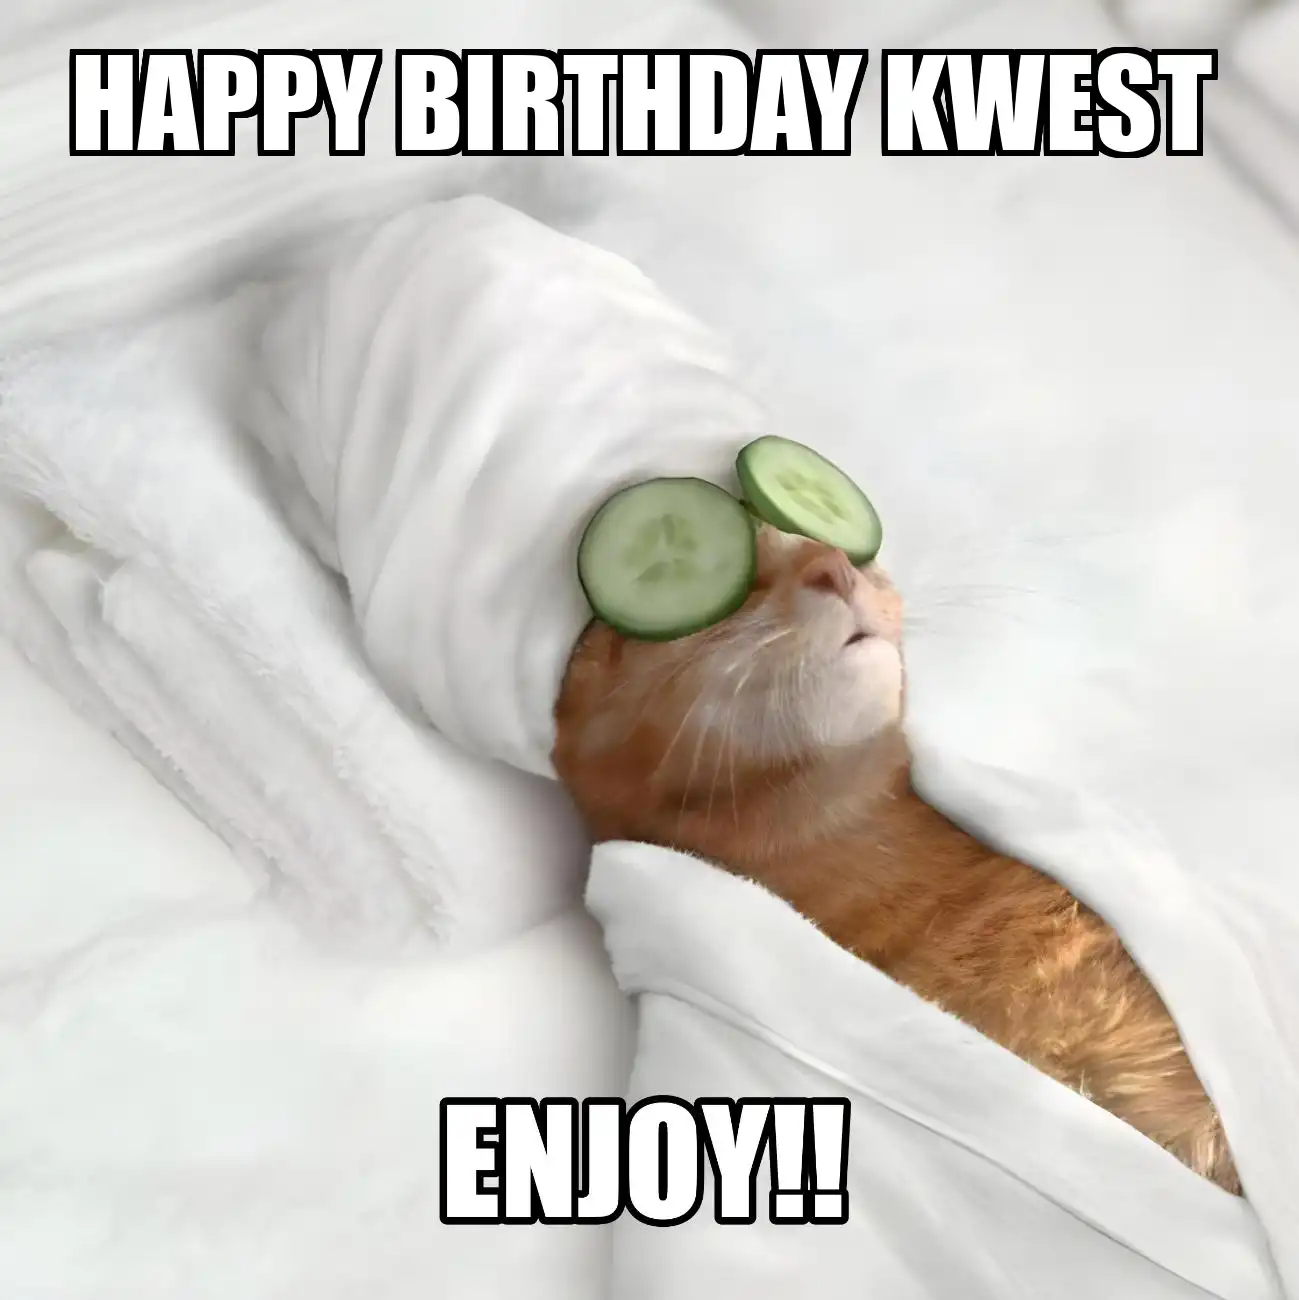 Happy Birthday Kwest Enjoy Cat Meme